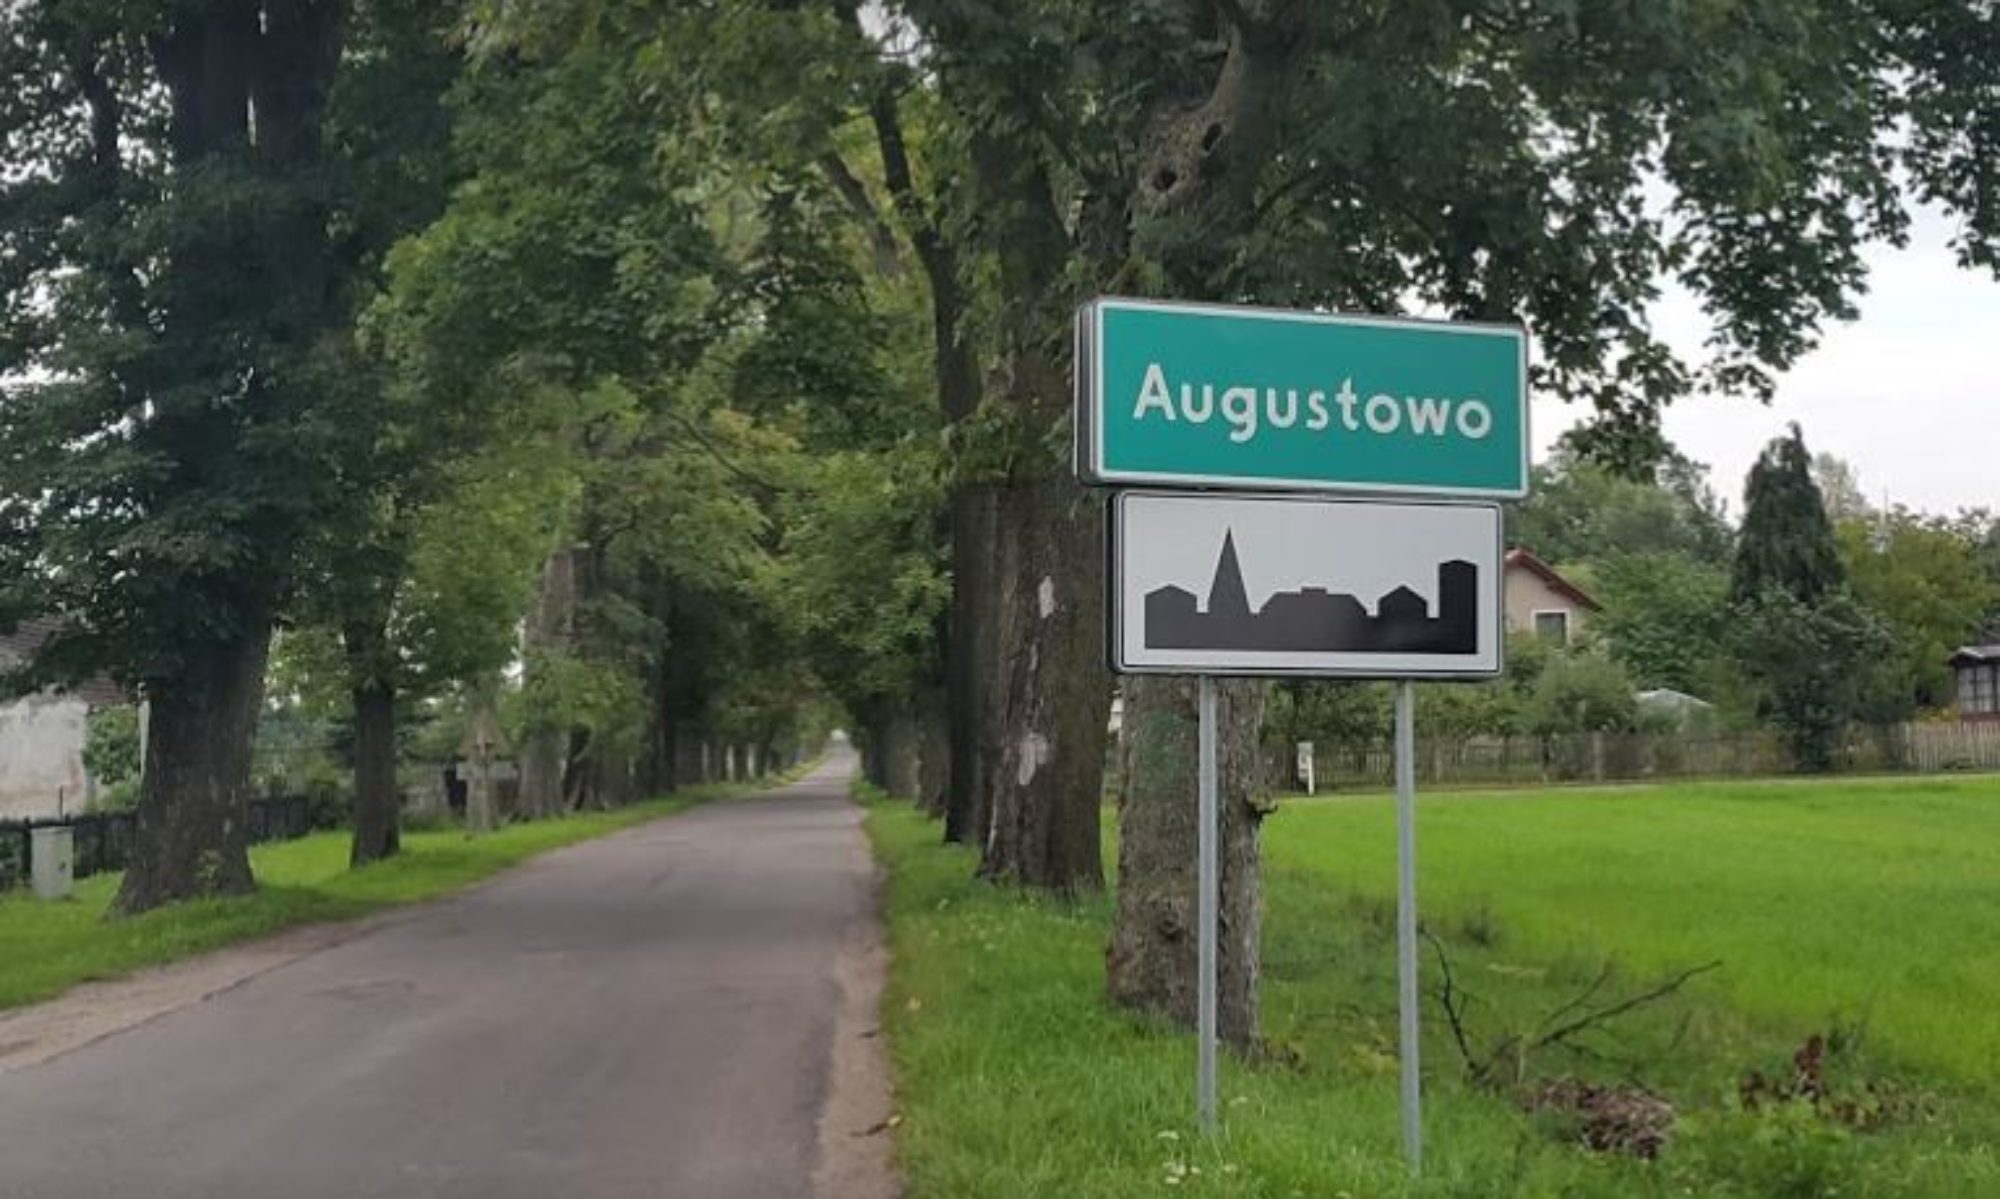 Augustowo